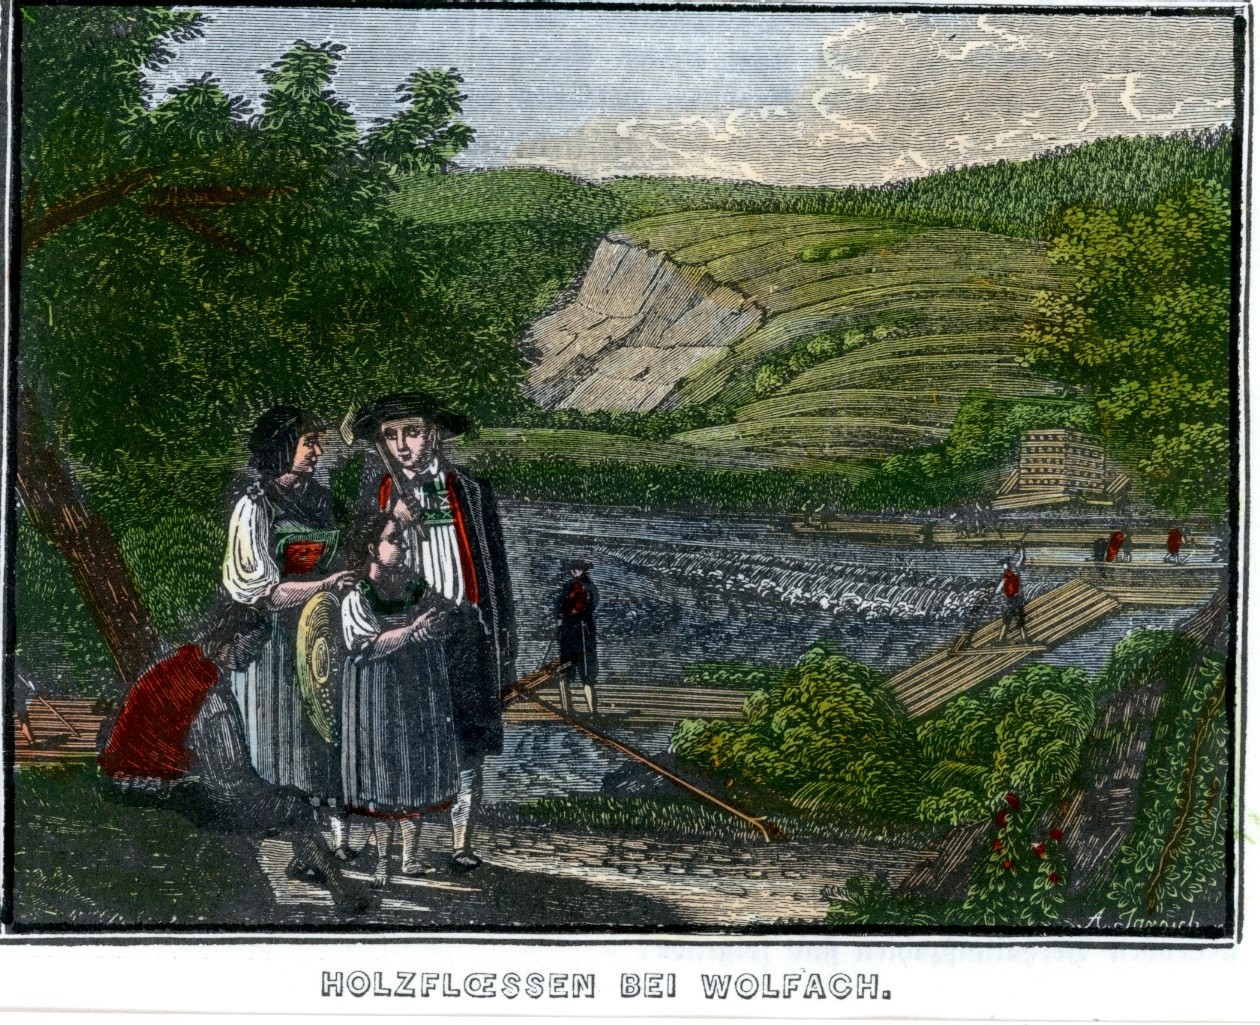 Colorierter Stich "Holzfloessen bei Wolfach" (Stadt Schiltach CC BY-NC-SA)